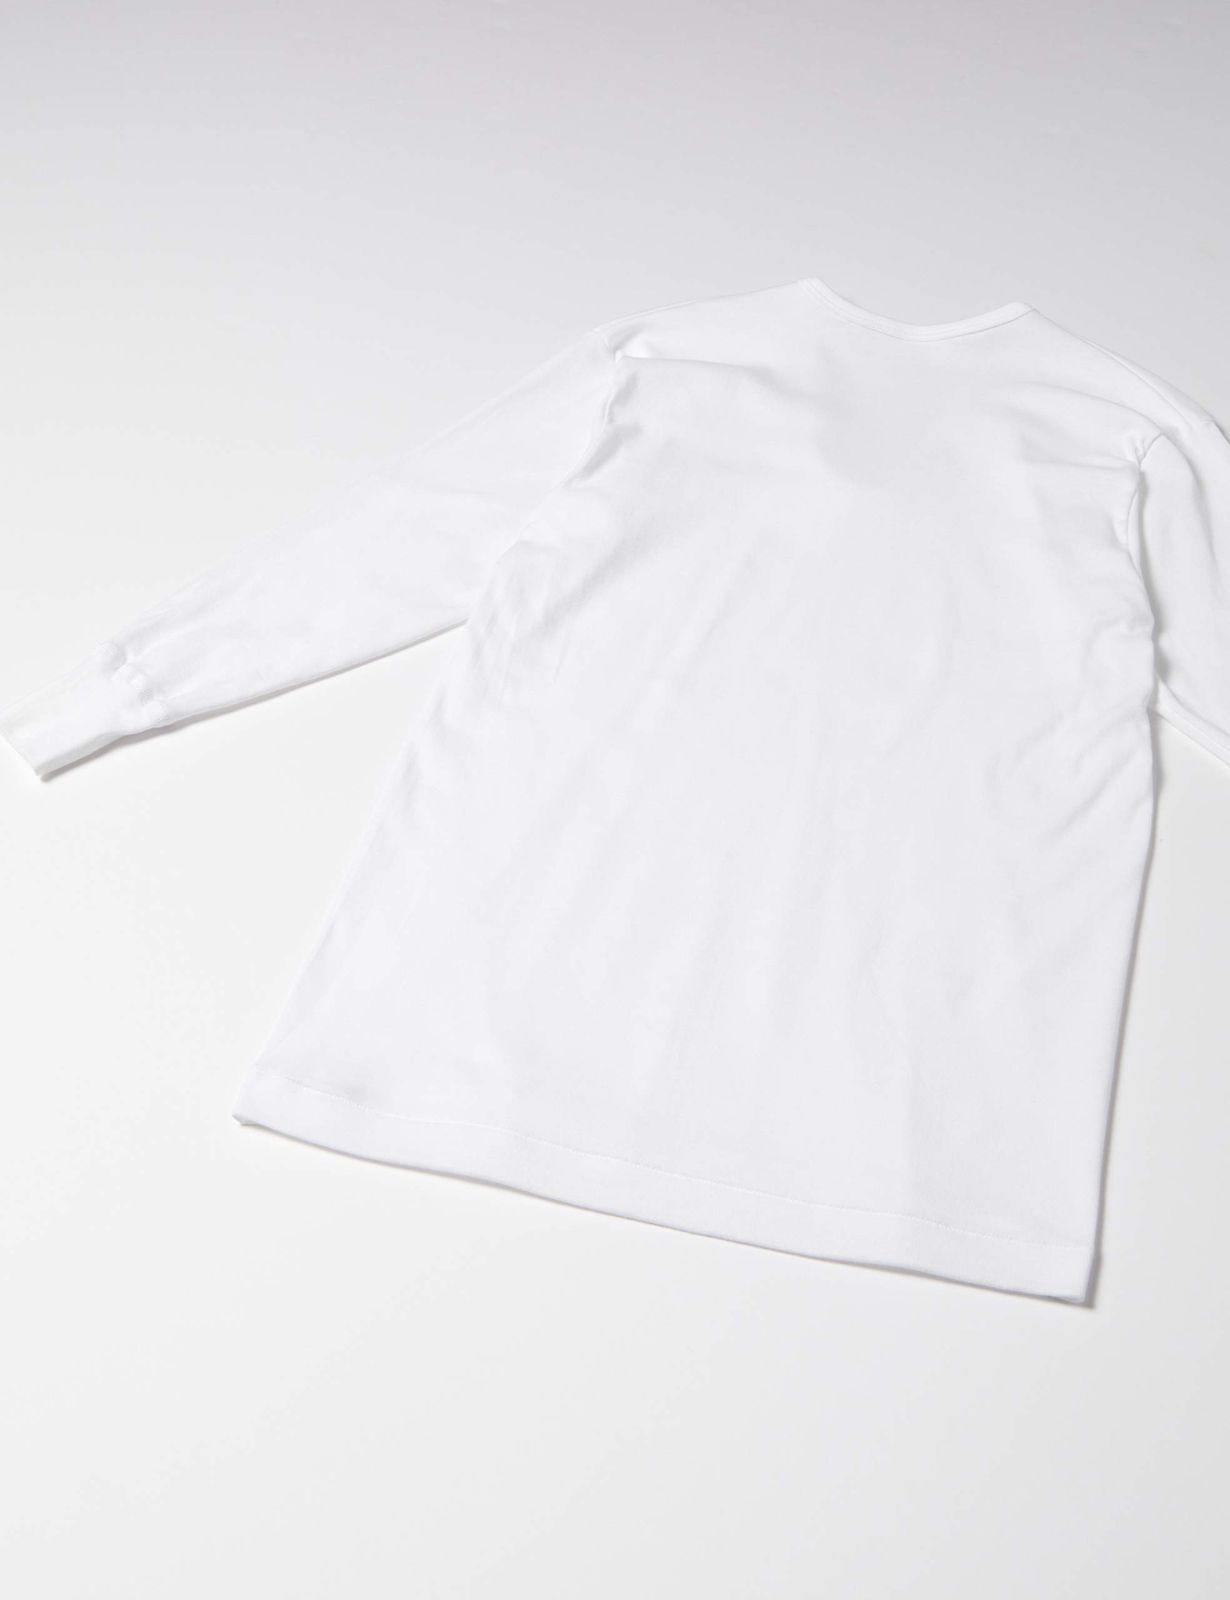 グンゼ インナーシャツ やわらか肌着 綿100%%%% 抗菌防臭加工 長袖U首 2枚組 SV61102 メンズ 